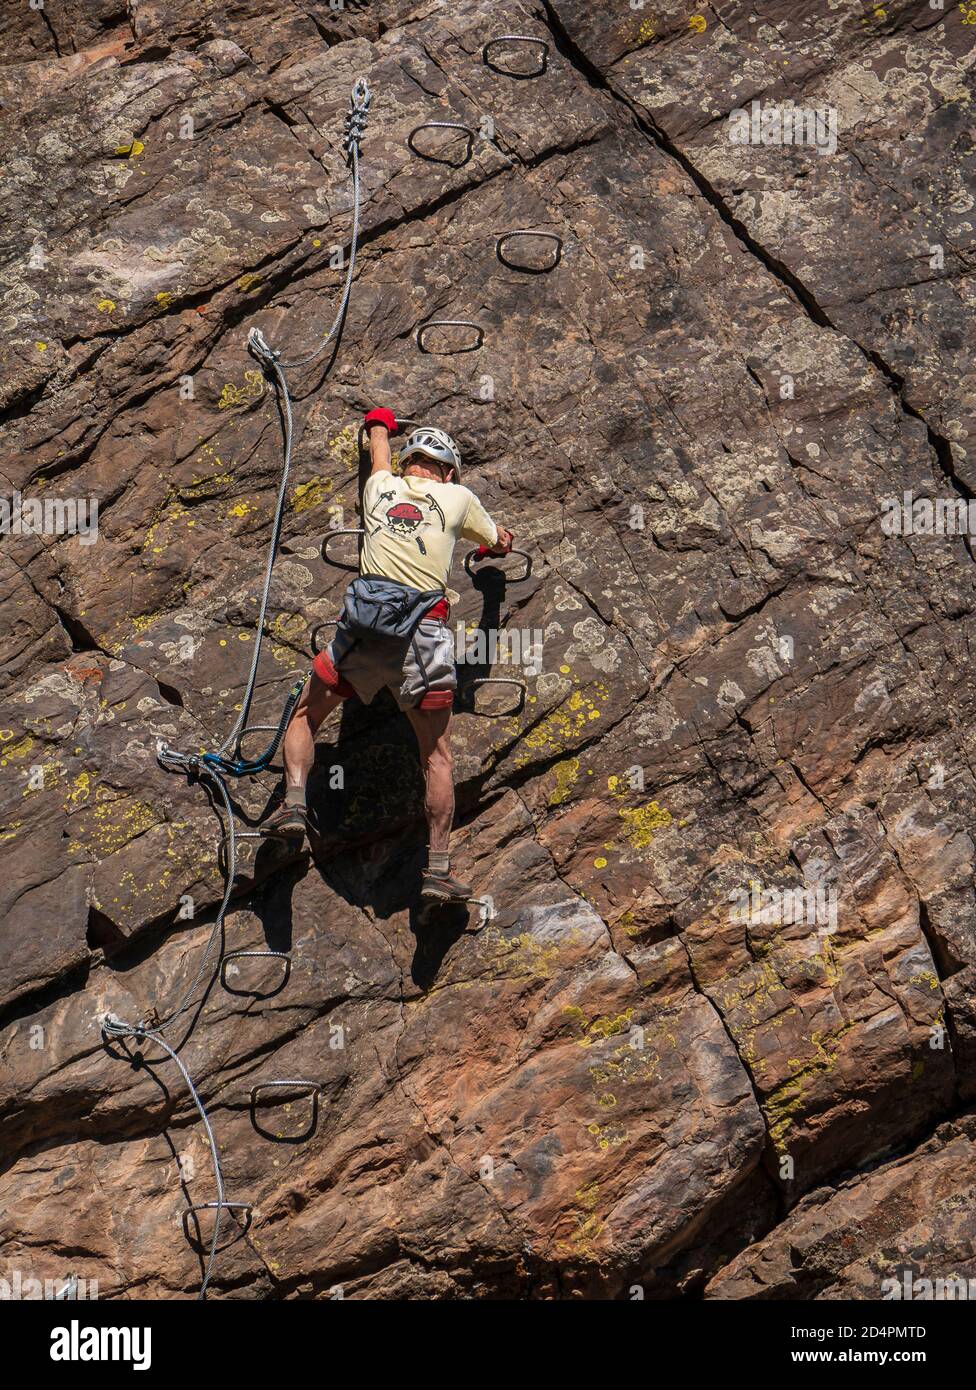 Climber tackles the Ouray Via Ferrata, Ouray, Colorado. Stock Photo